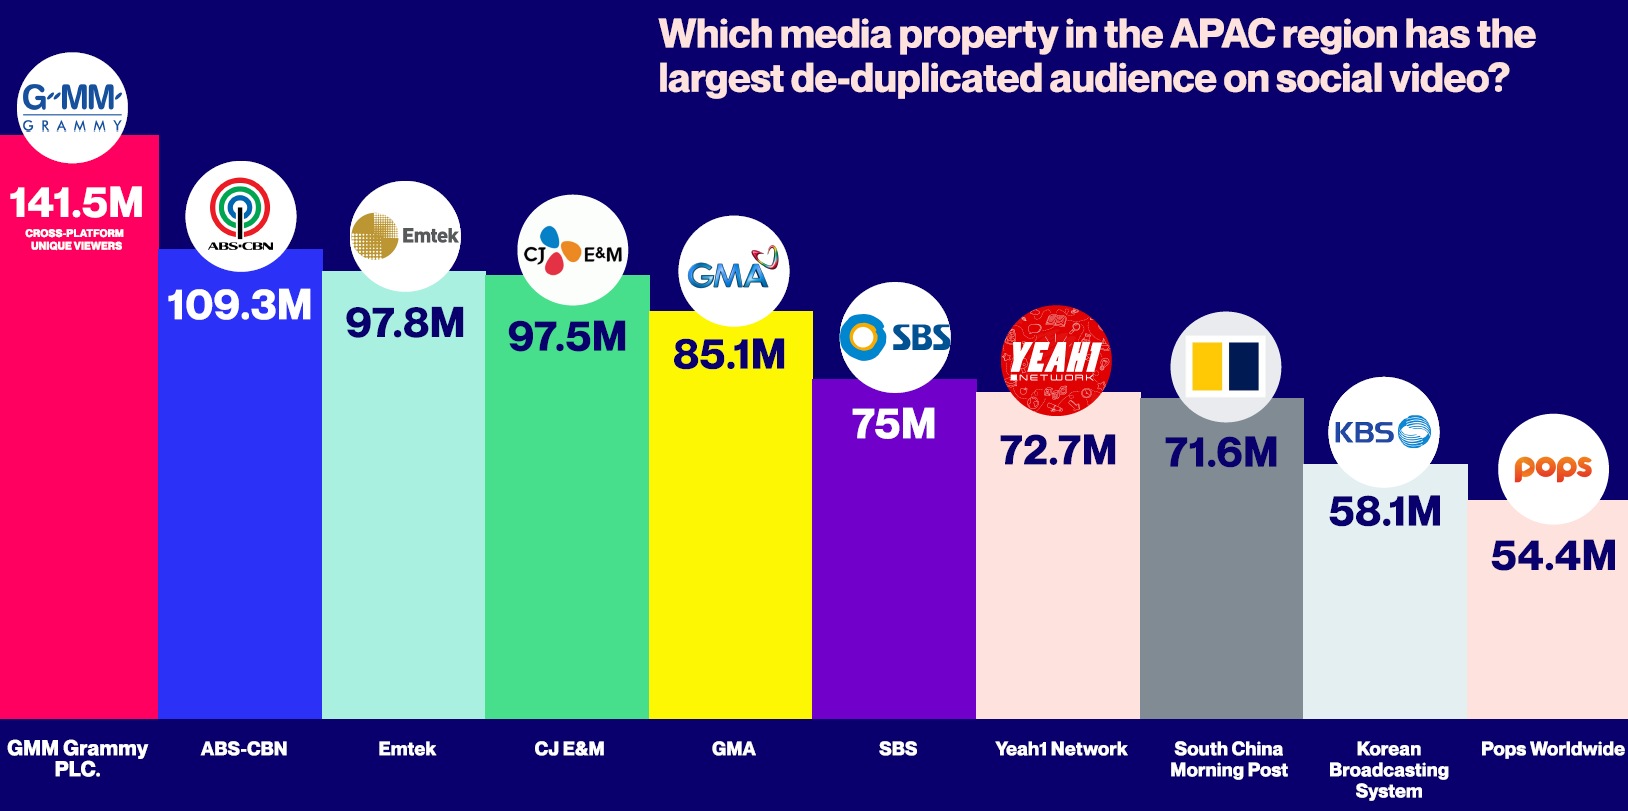 Meet the Top 10 Cross-Platform APAC Media Giants Based on True Audience Reach